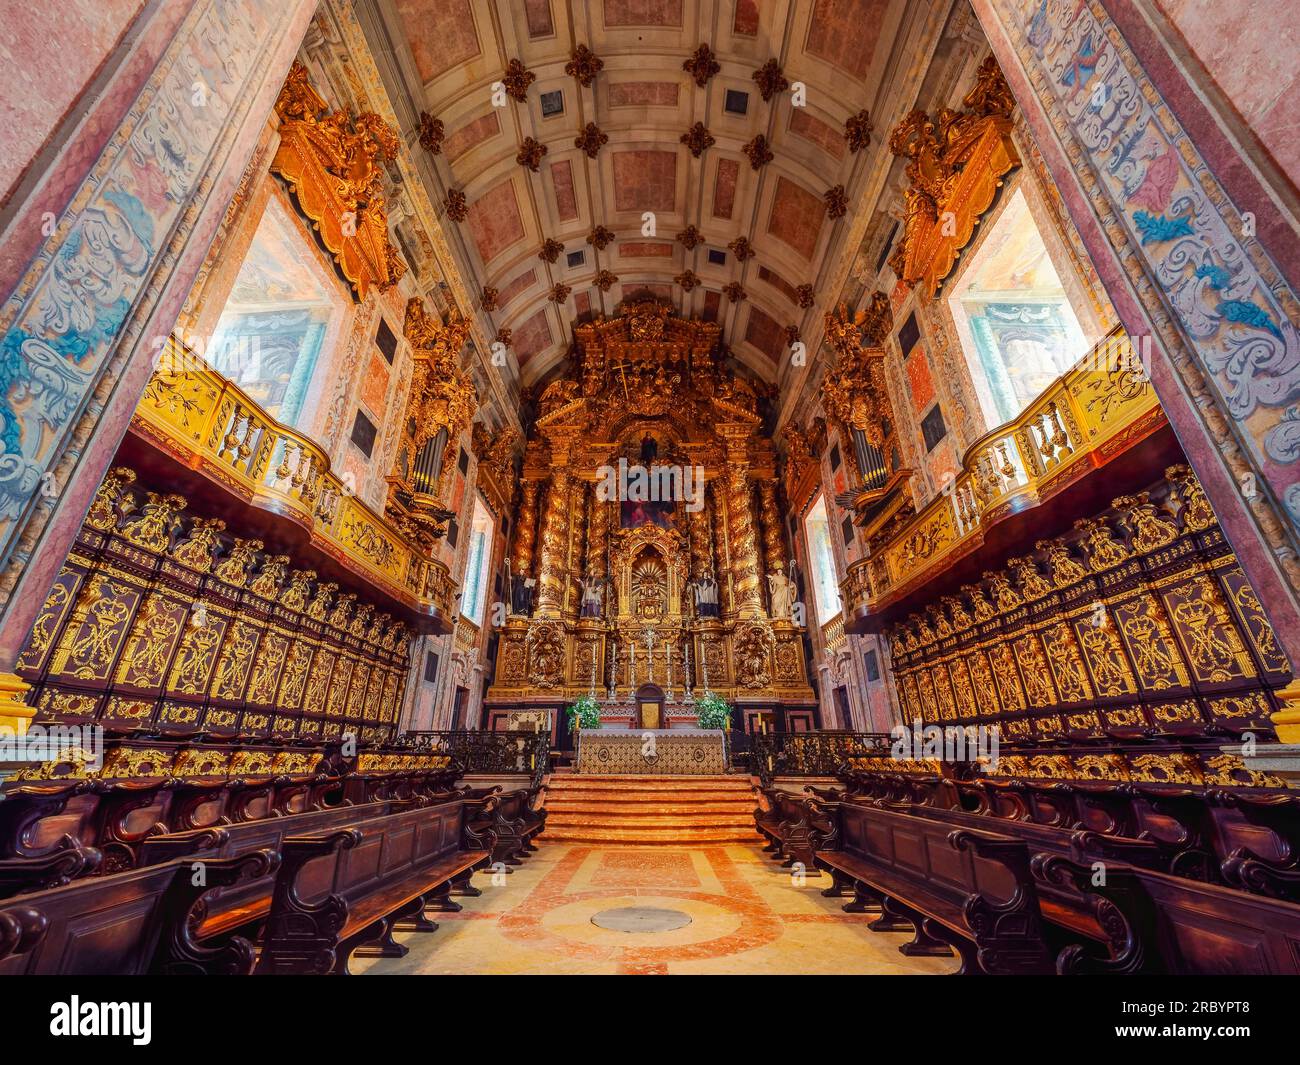 Il famoso interno della cattedrale se di Porto e la chiesa cattolica romana nel centro storico della città, che è il più antico monumento del Portogallo Foto Stock